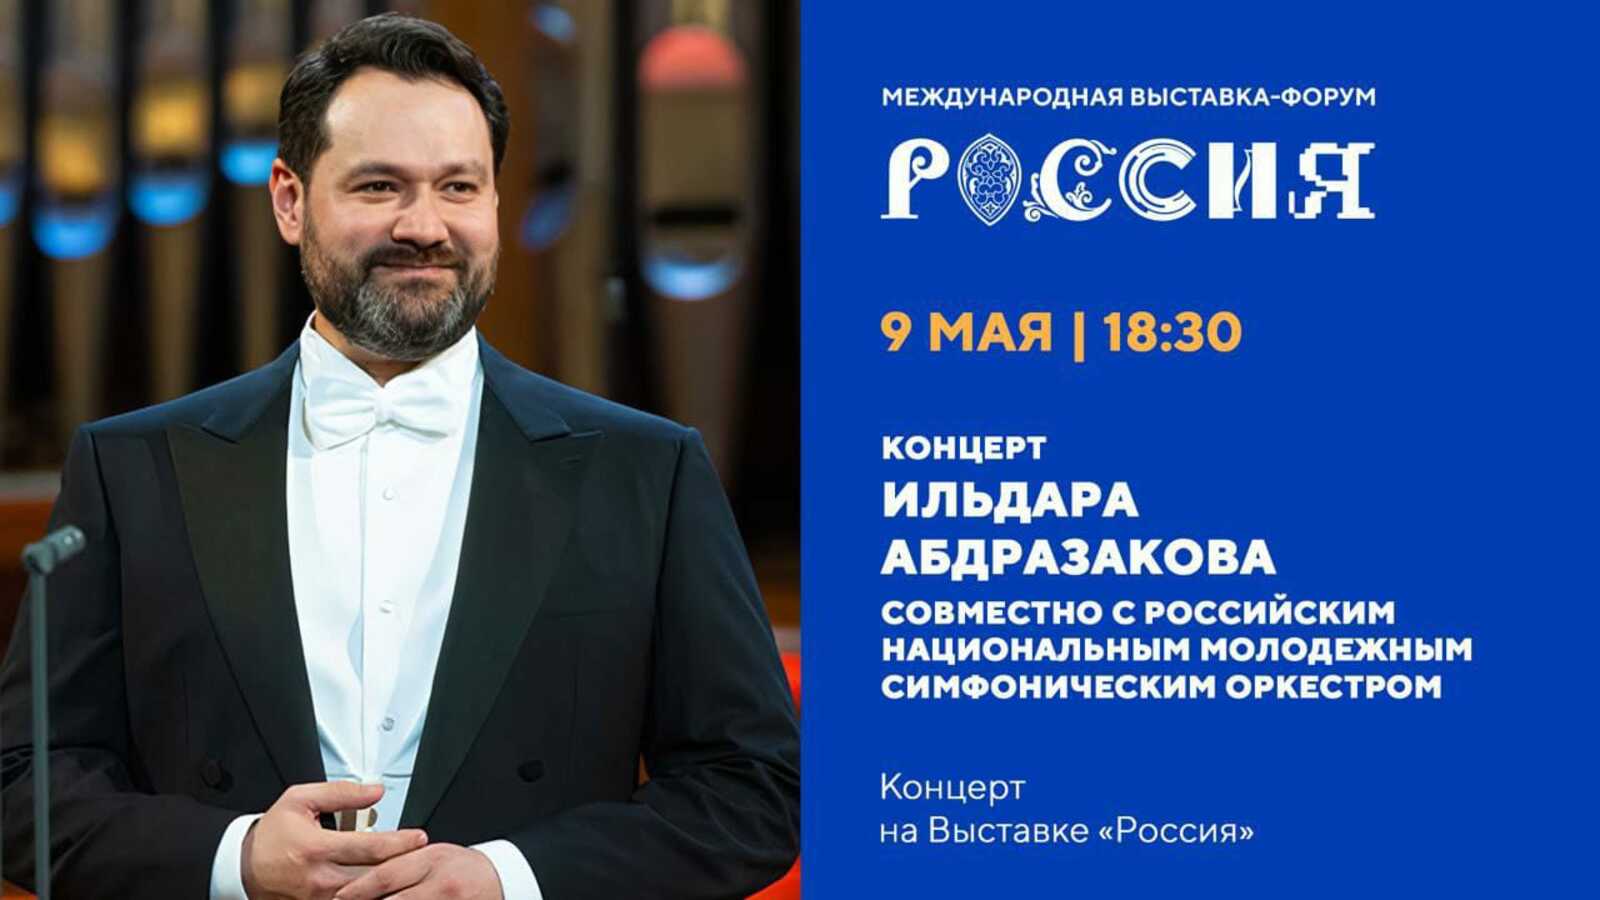 В День  Победы в Москве состоится грандиозный концерт  Ильдара  Абдразакова